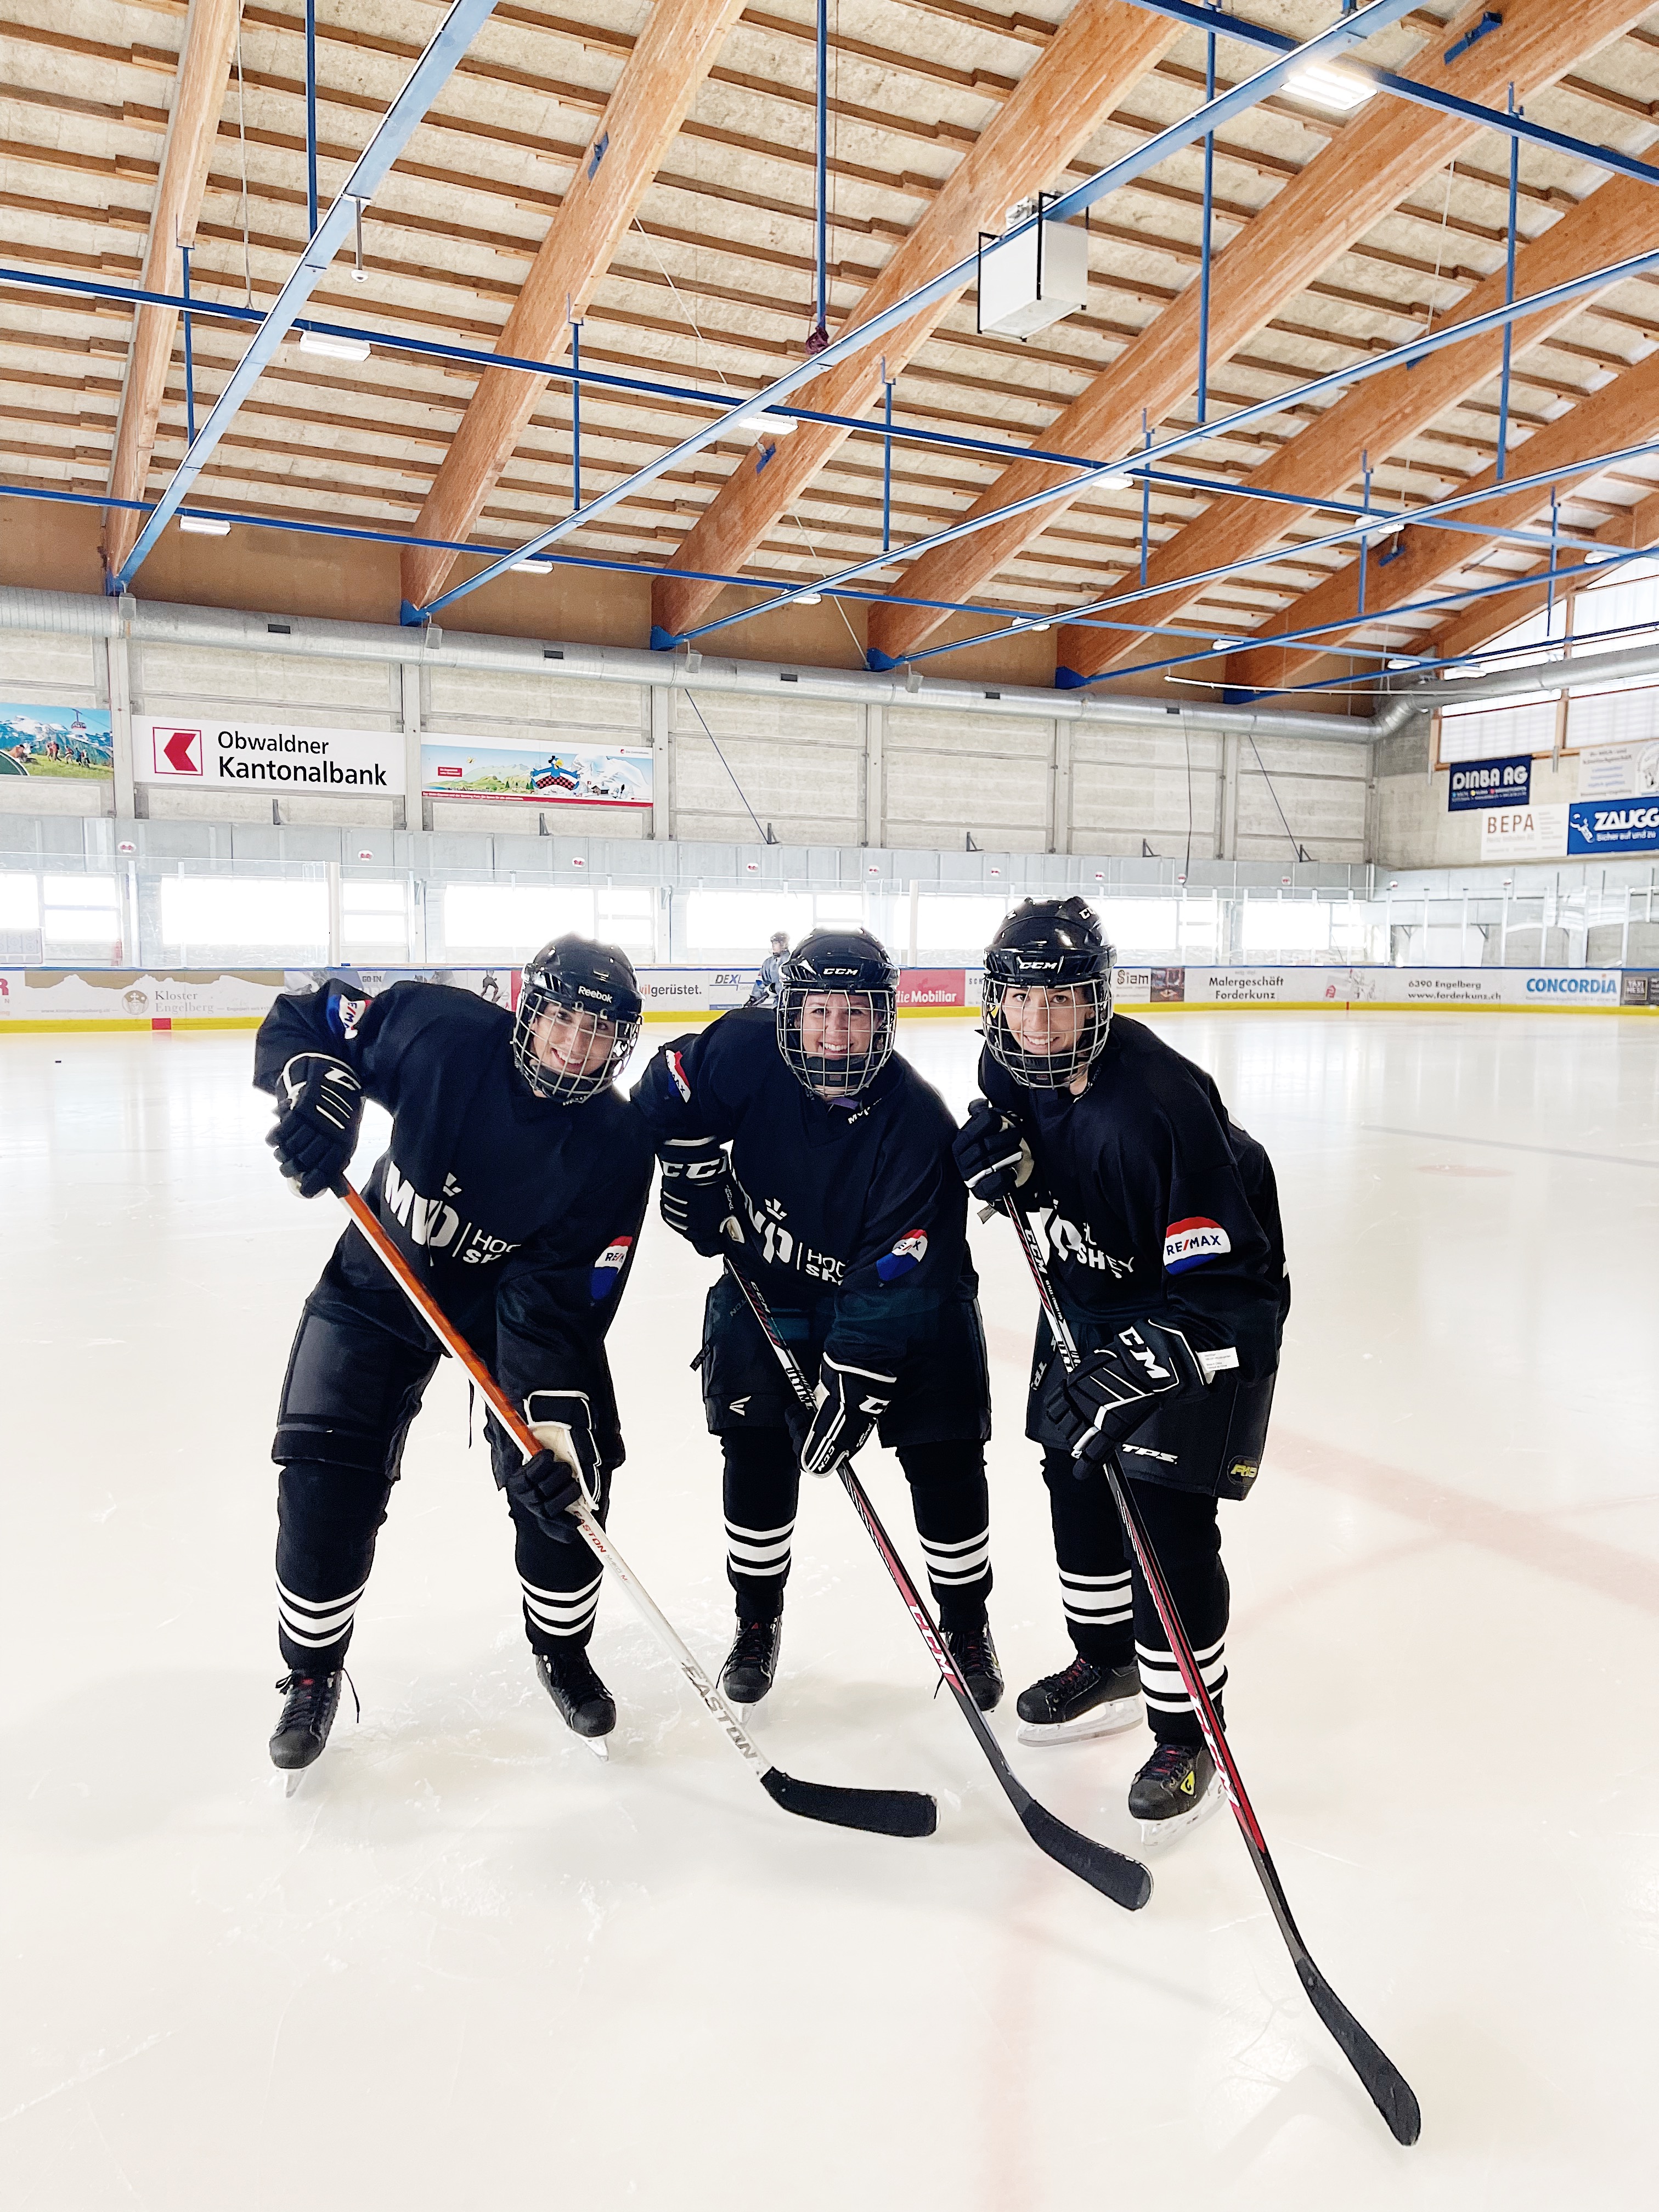 Unser Praxisteam in Hockeyausrüstung…